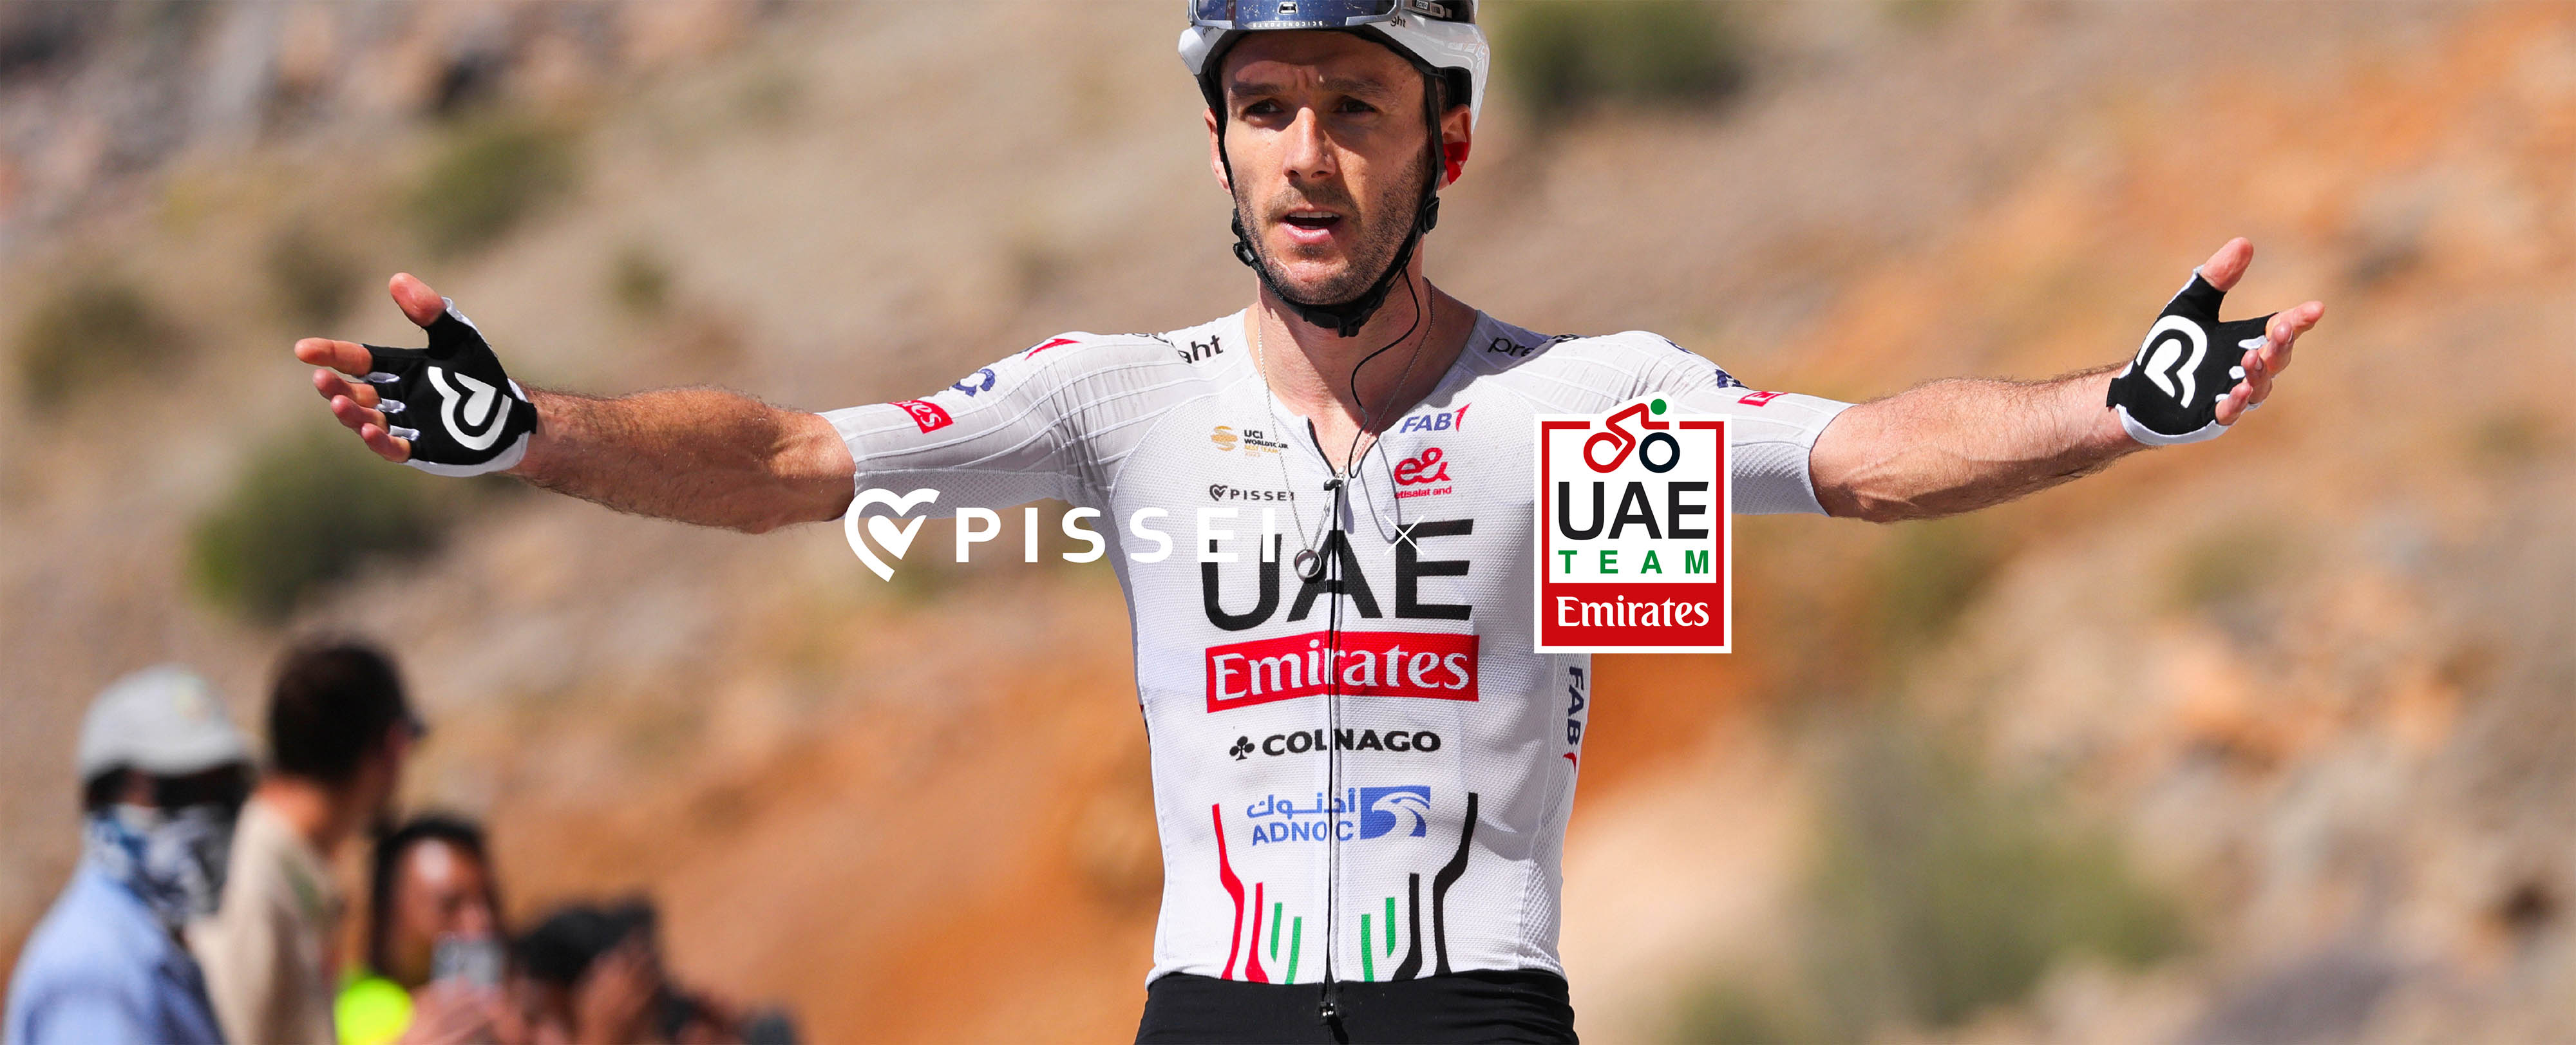 PISSEI x UAE Team Emirates